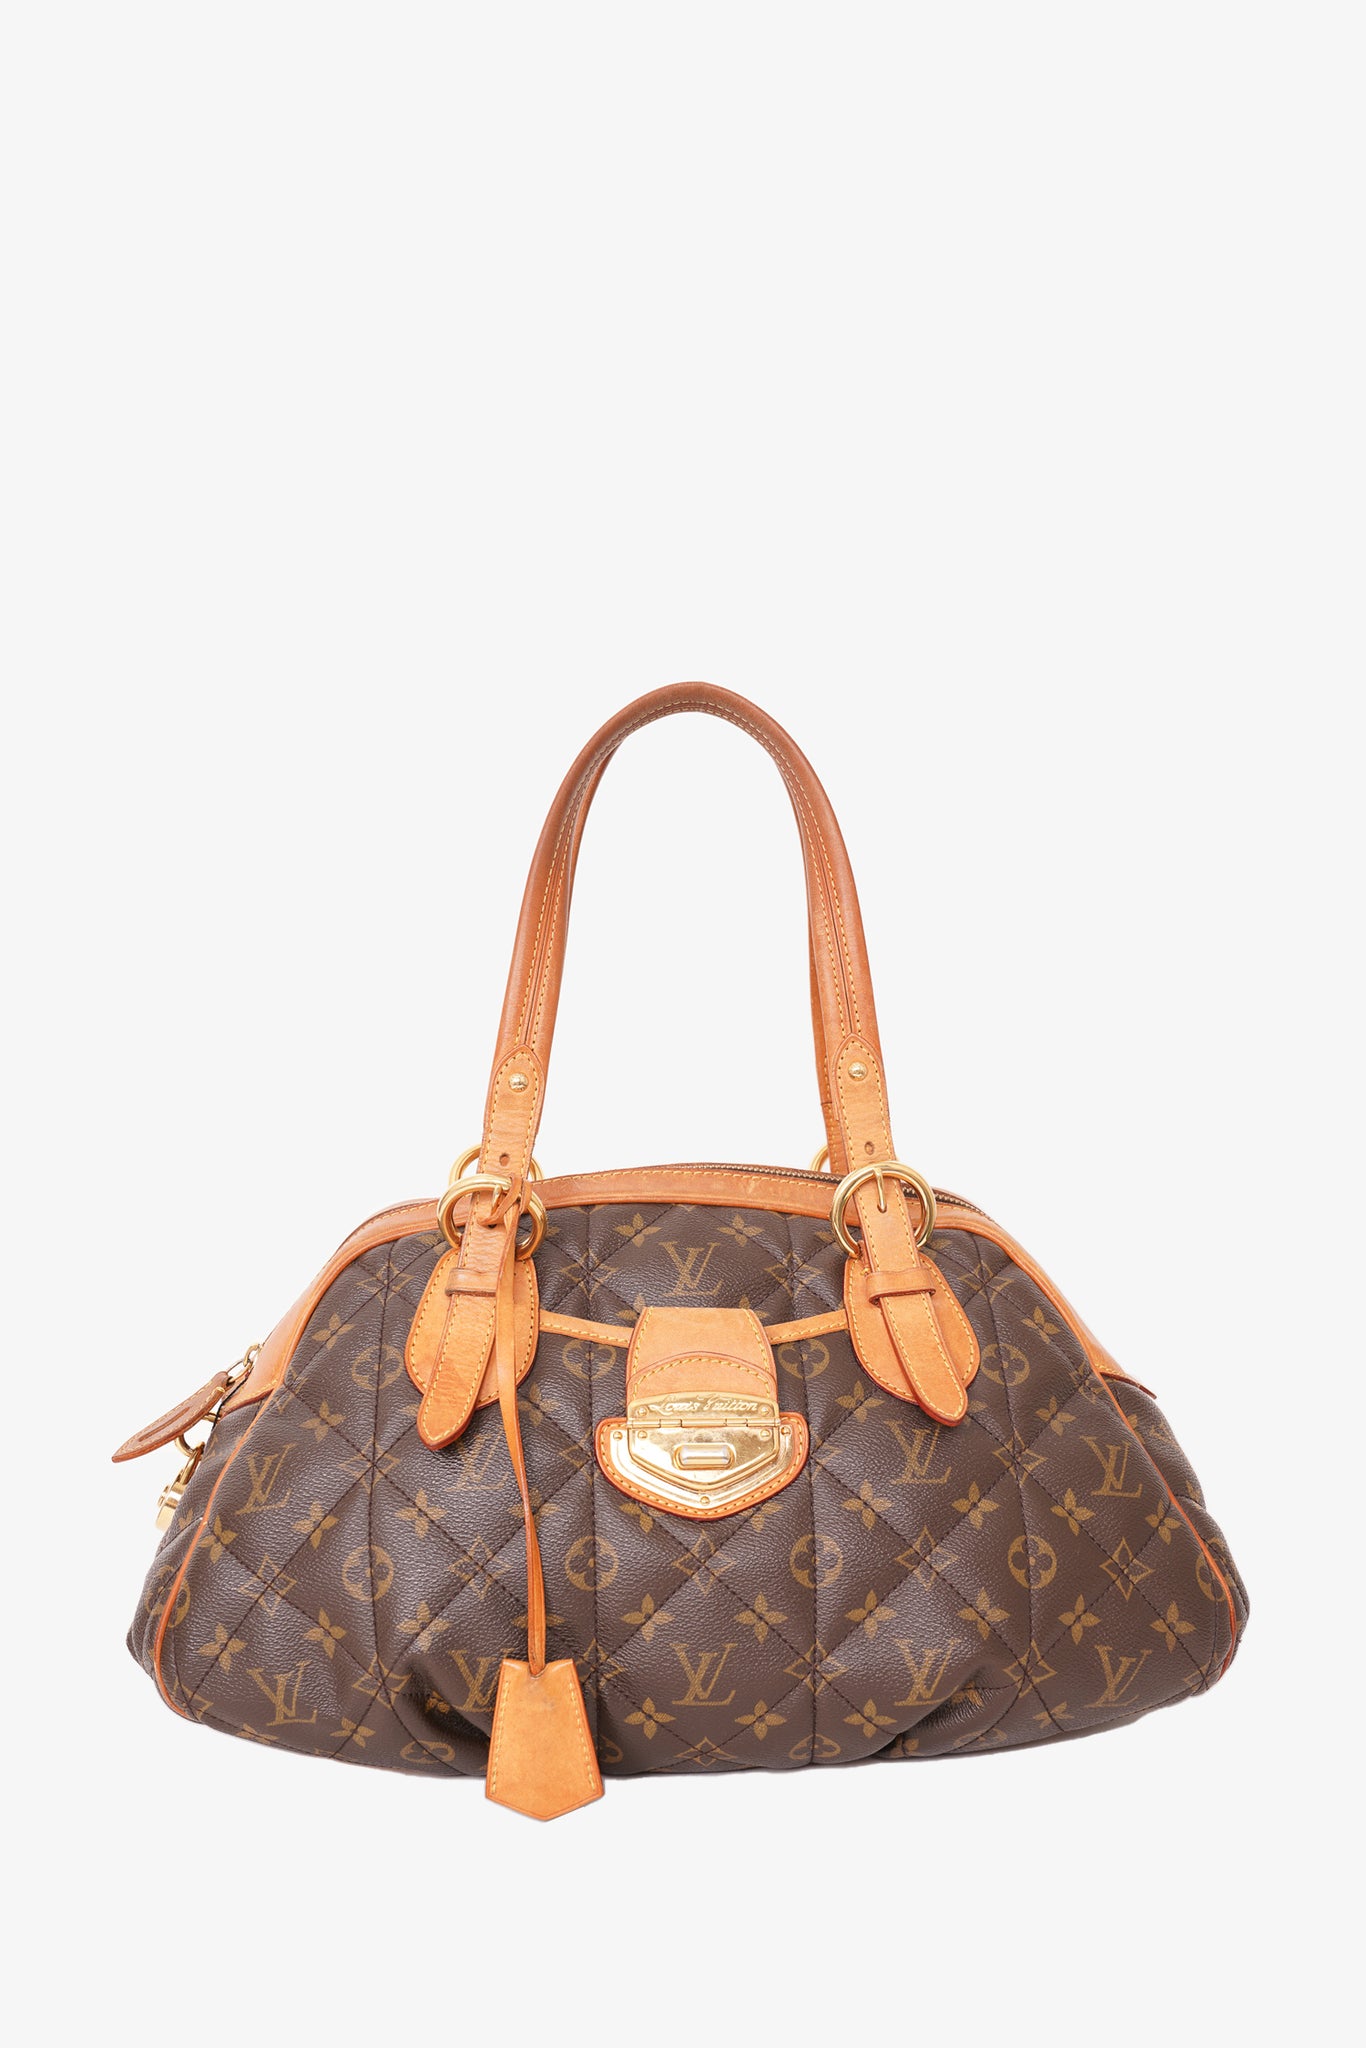 Vintage Louis Vuitton envelope purse w/strap - clothing & accessories - by  owner - apparel sale - craigslist